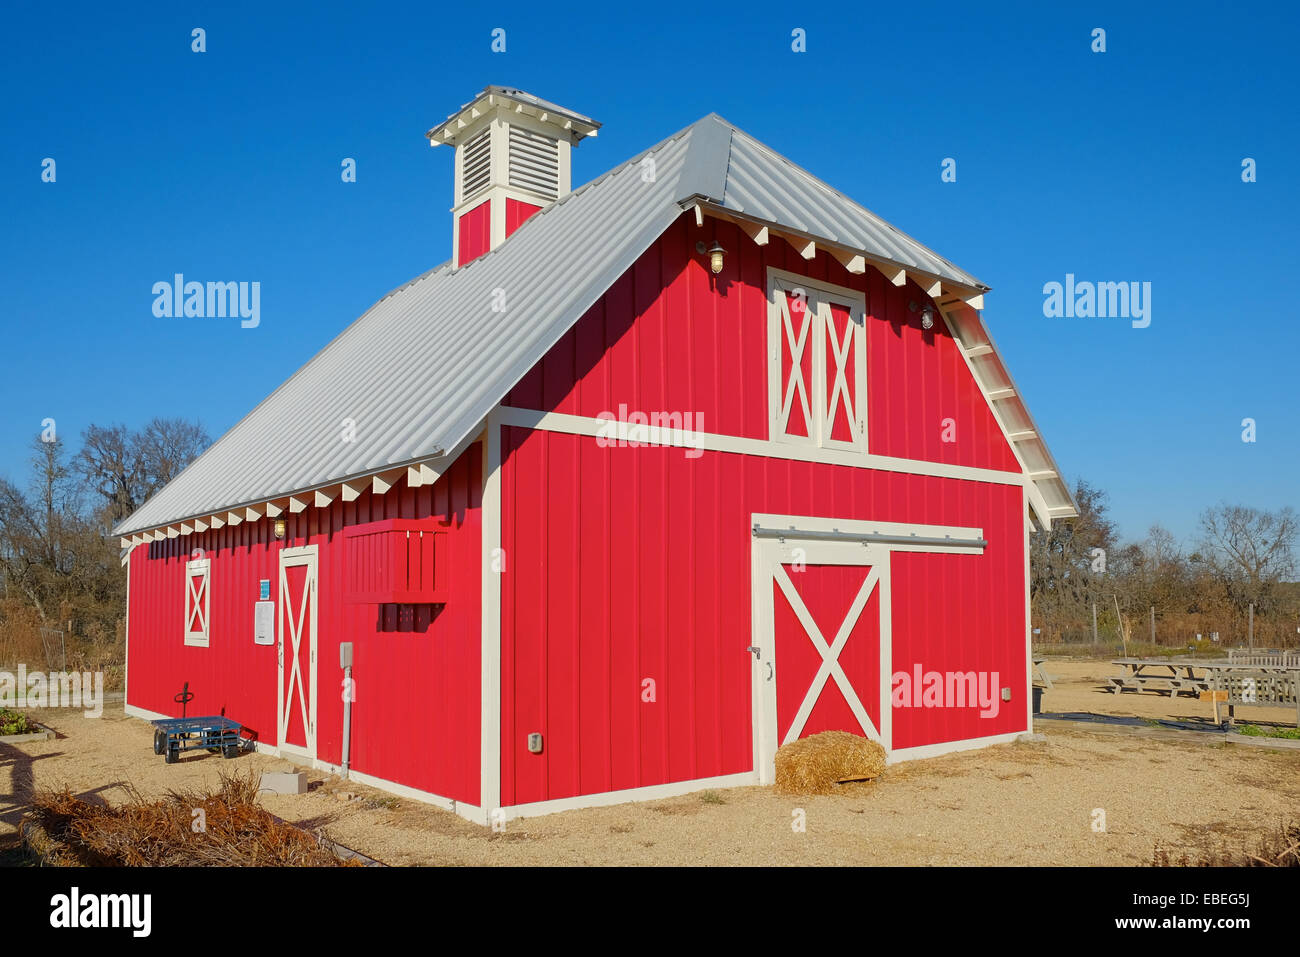 Petite grange rouge trouvé sur une ferme ou un ranch rural principalement utilisé pour le stockage dans les États-Unis. Banque D'Images